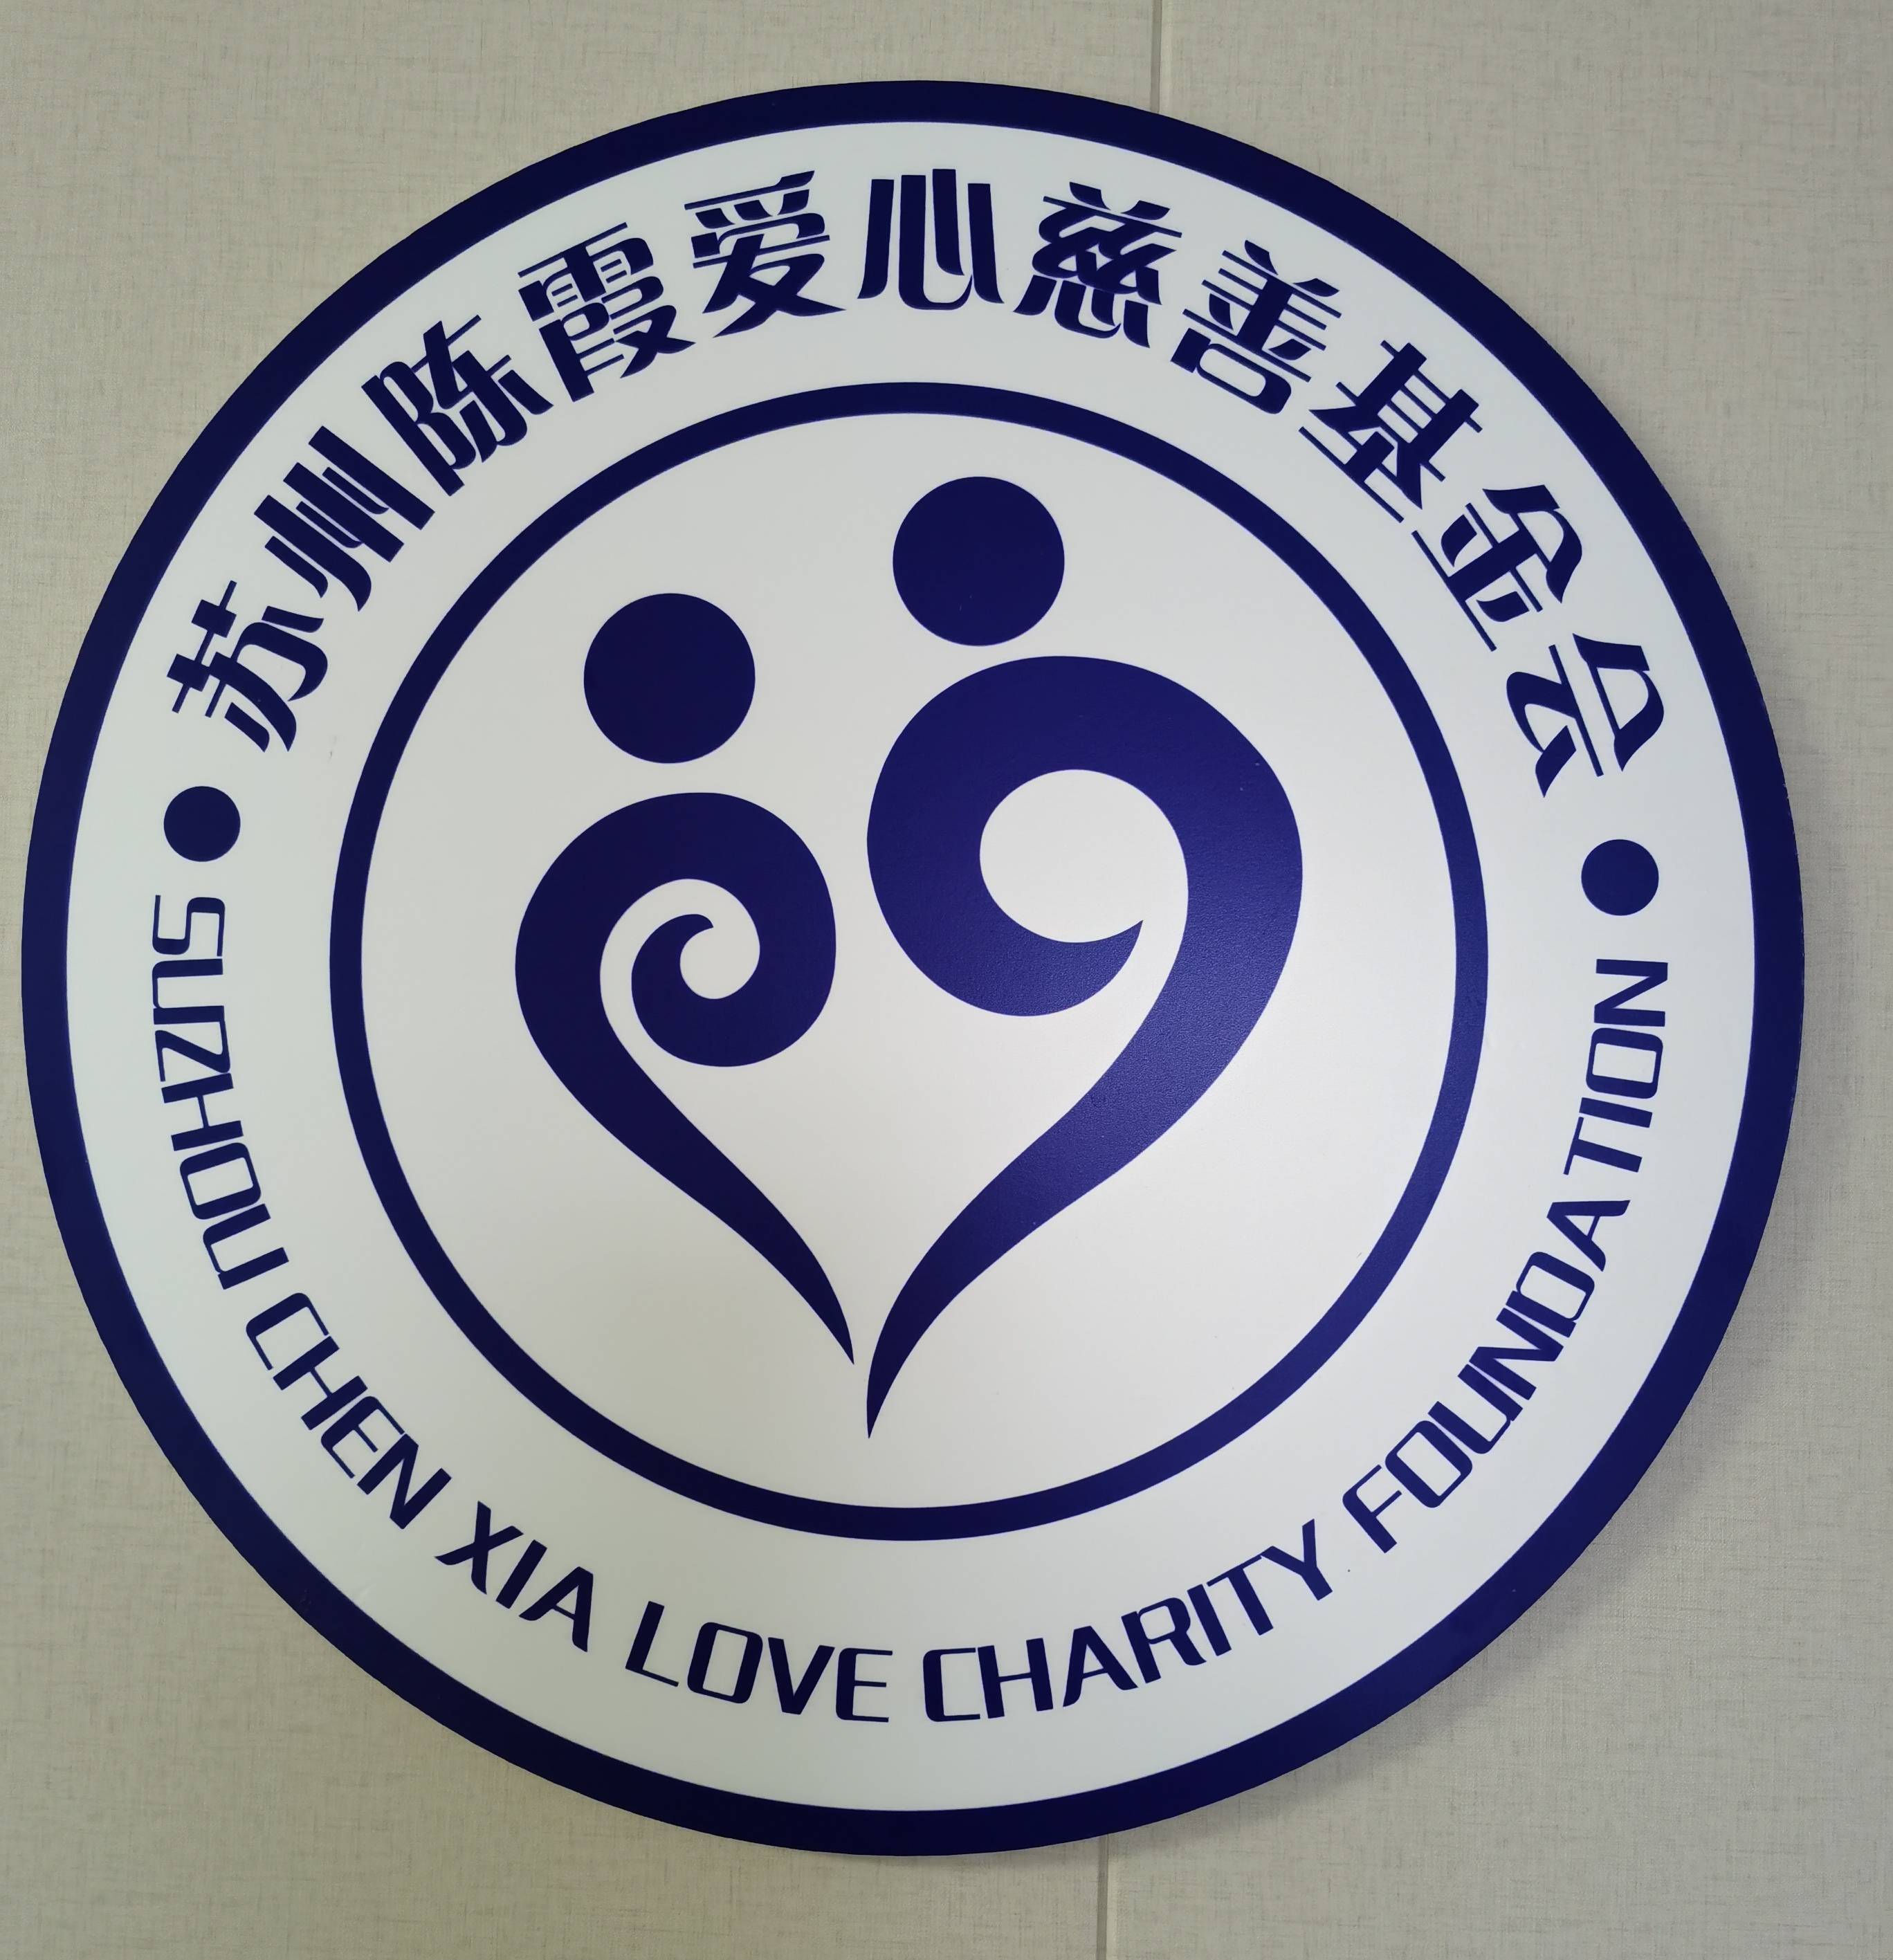 映入眼帘的"苏州陈霞爱心慈善基金会"标志